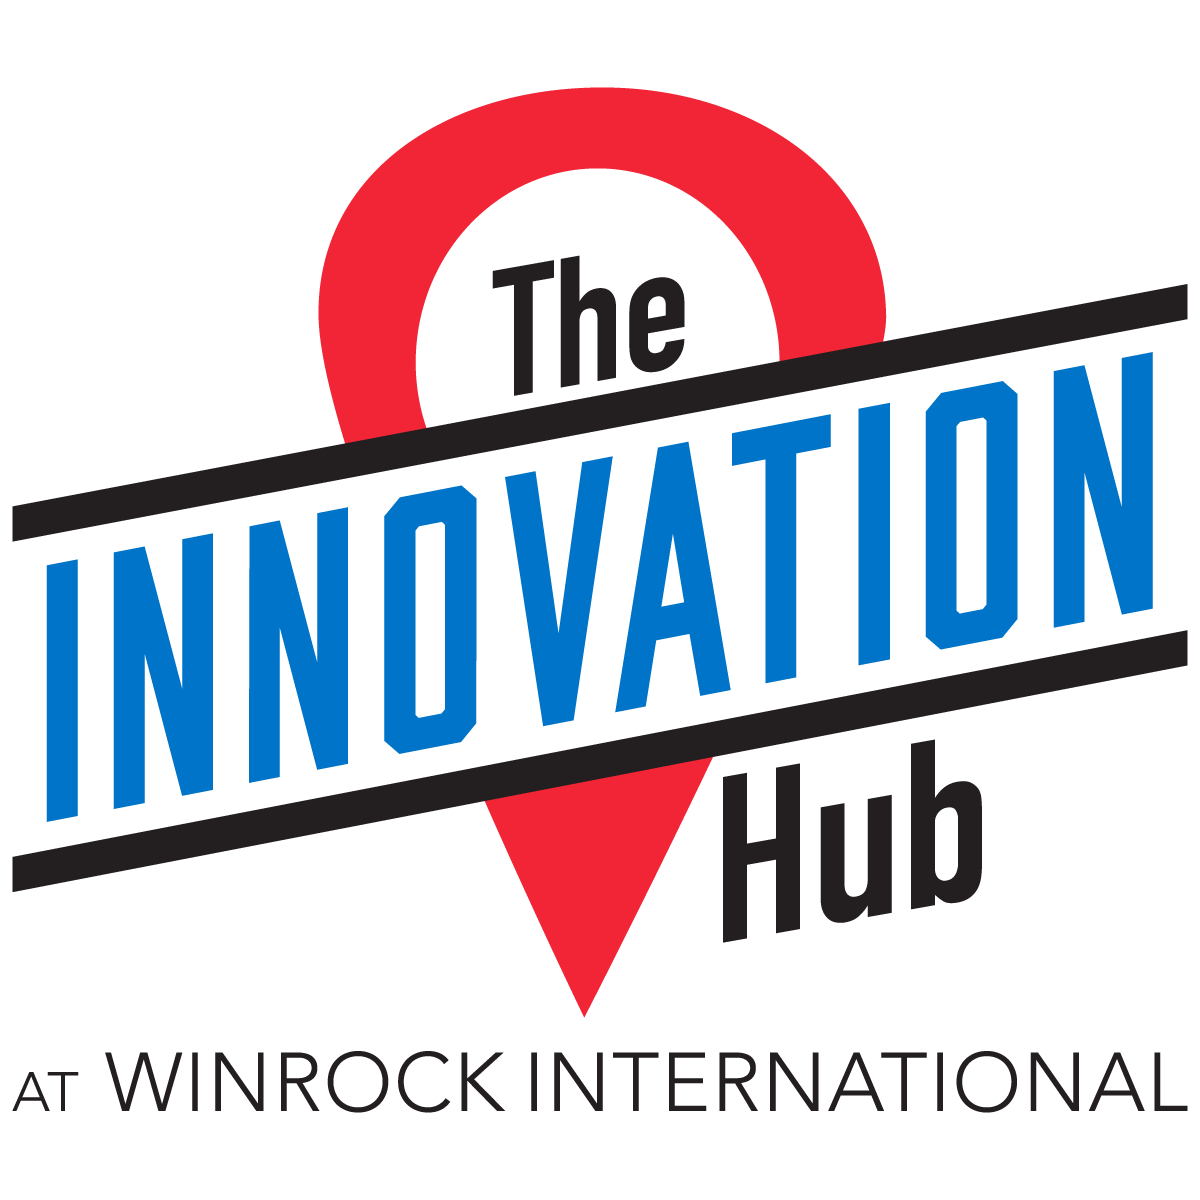 Arkansas Regional Innovation Hub